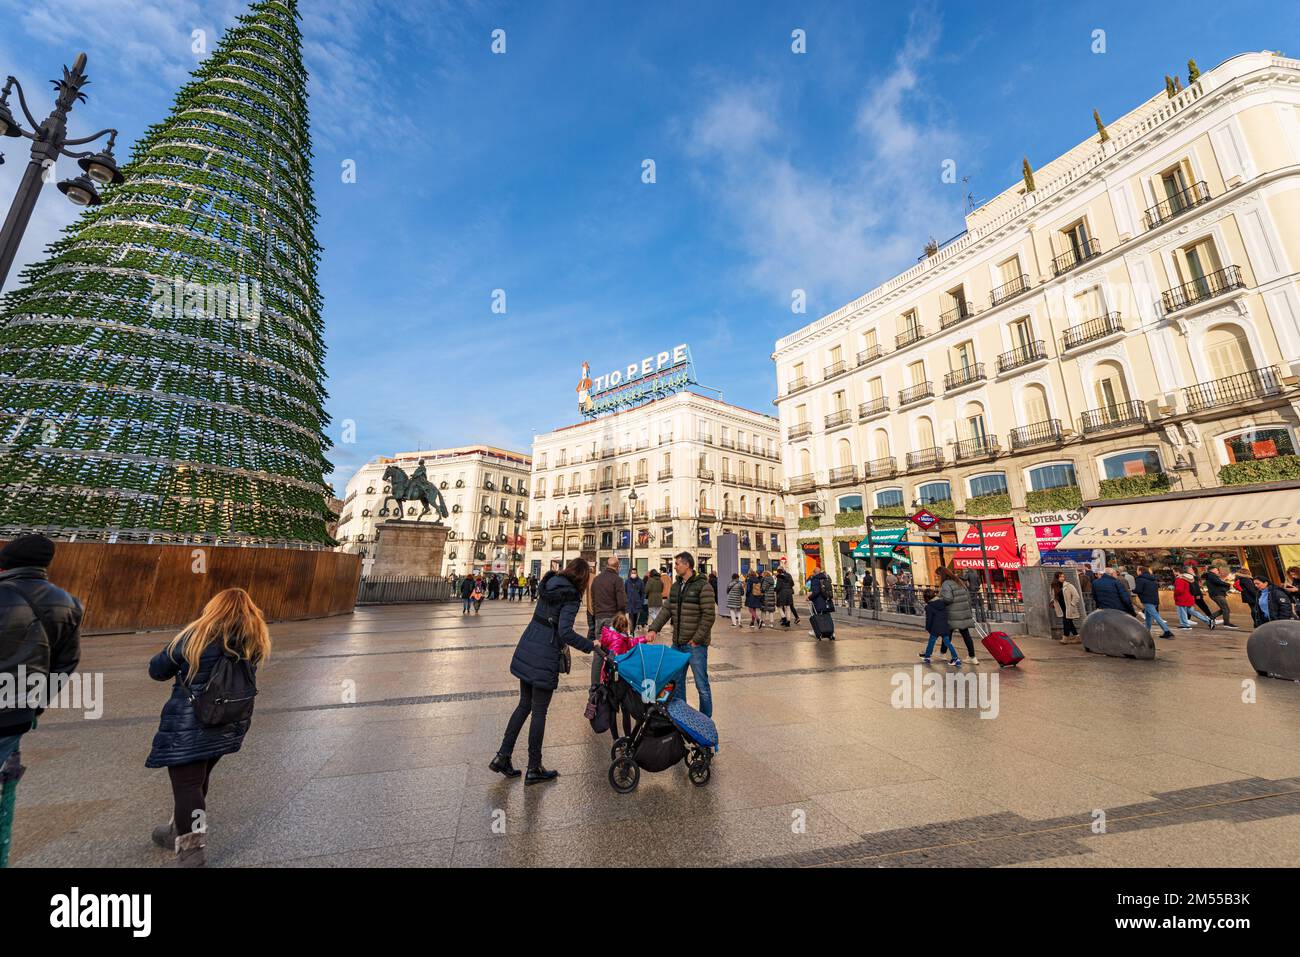 Puerta del Sol con l'albero di Natale, una delle piazze più importanti e famose del centro di Madrid, comunità di Madrid, Spagna, Europa meridionale. Foto Stock